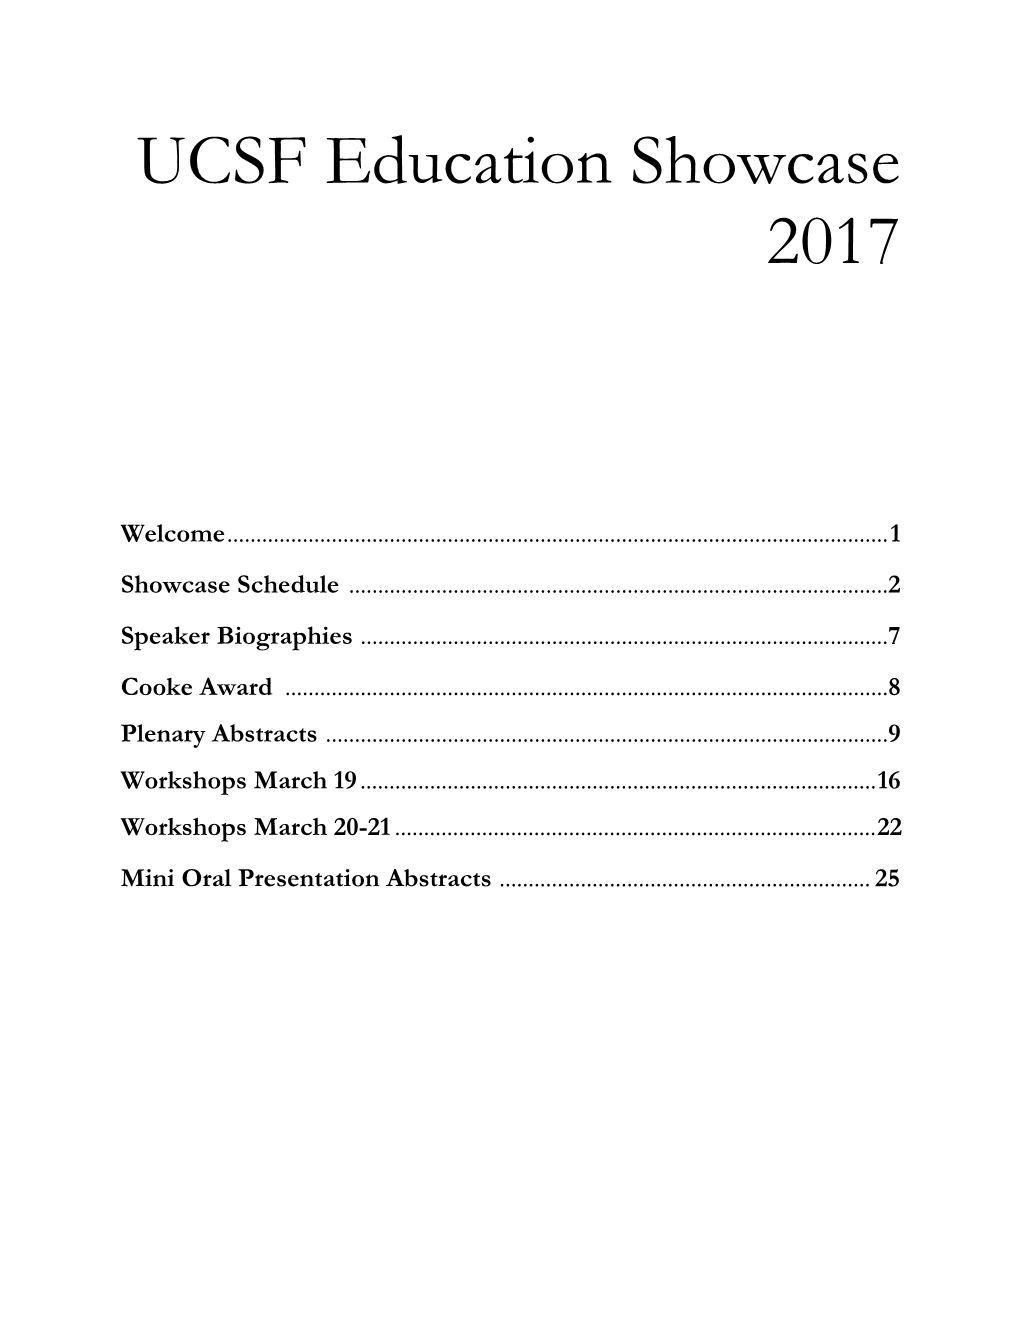 UCSF Education Showcase 2017